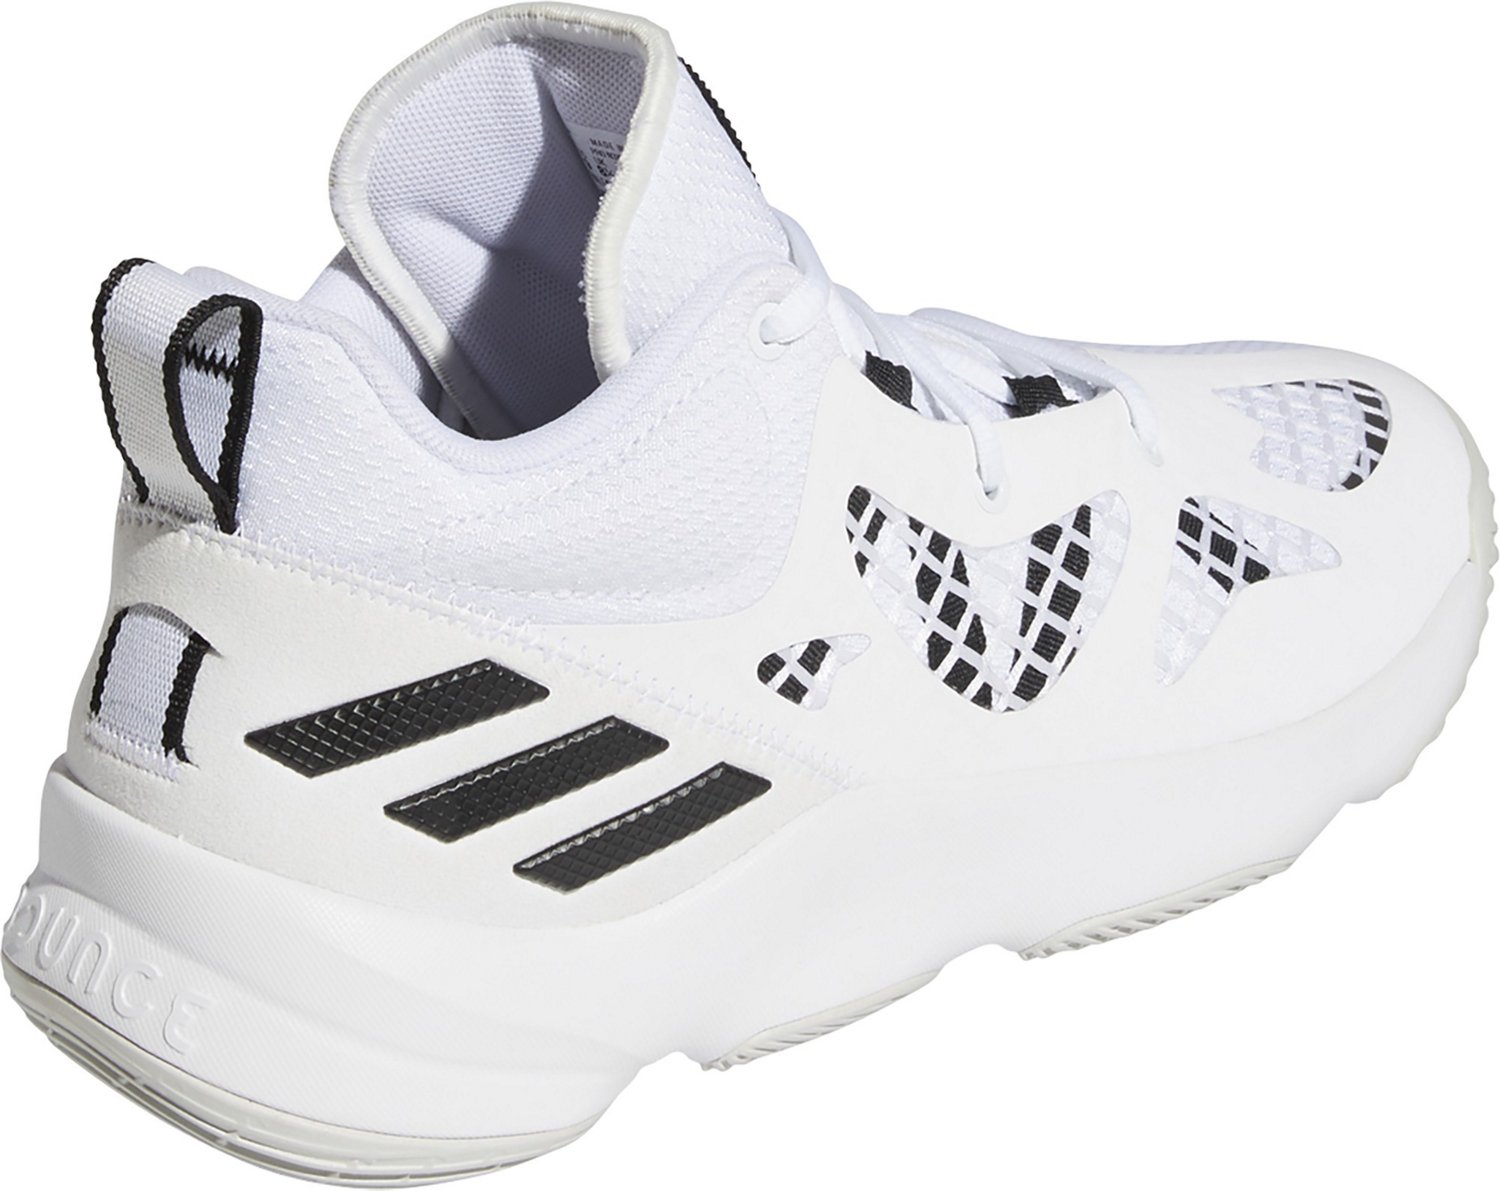 Mens Adidas Basketball Shoes